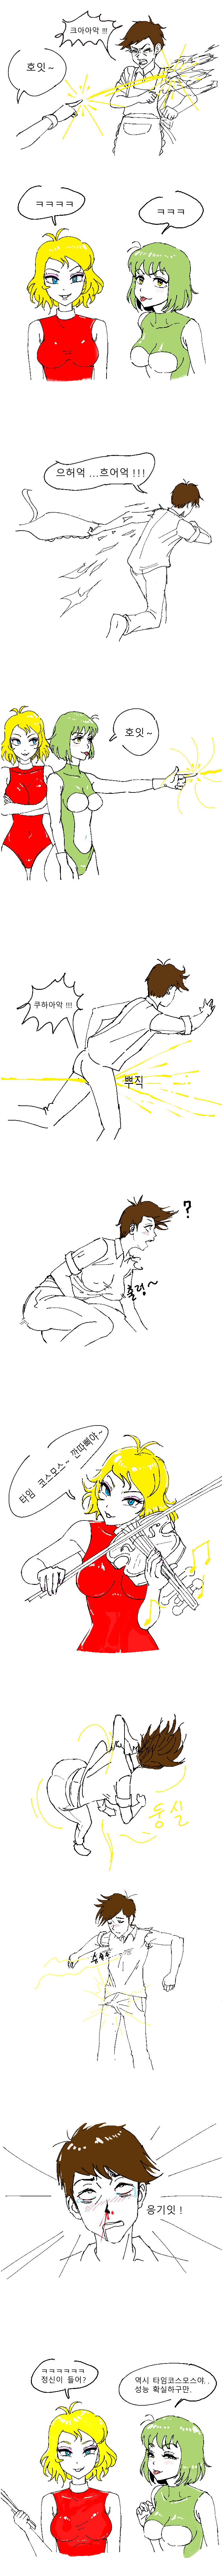 18) 애기썅년 둘리 만화.manhwa